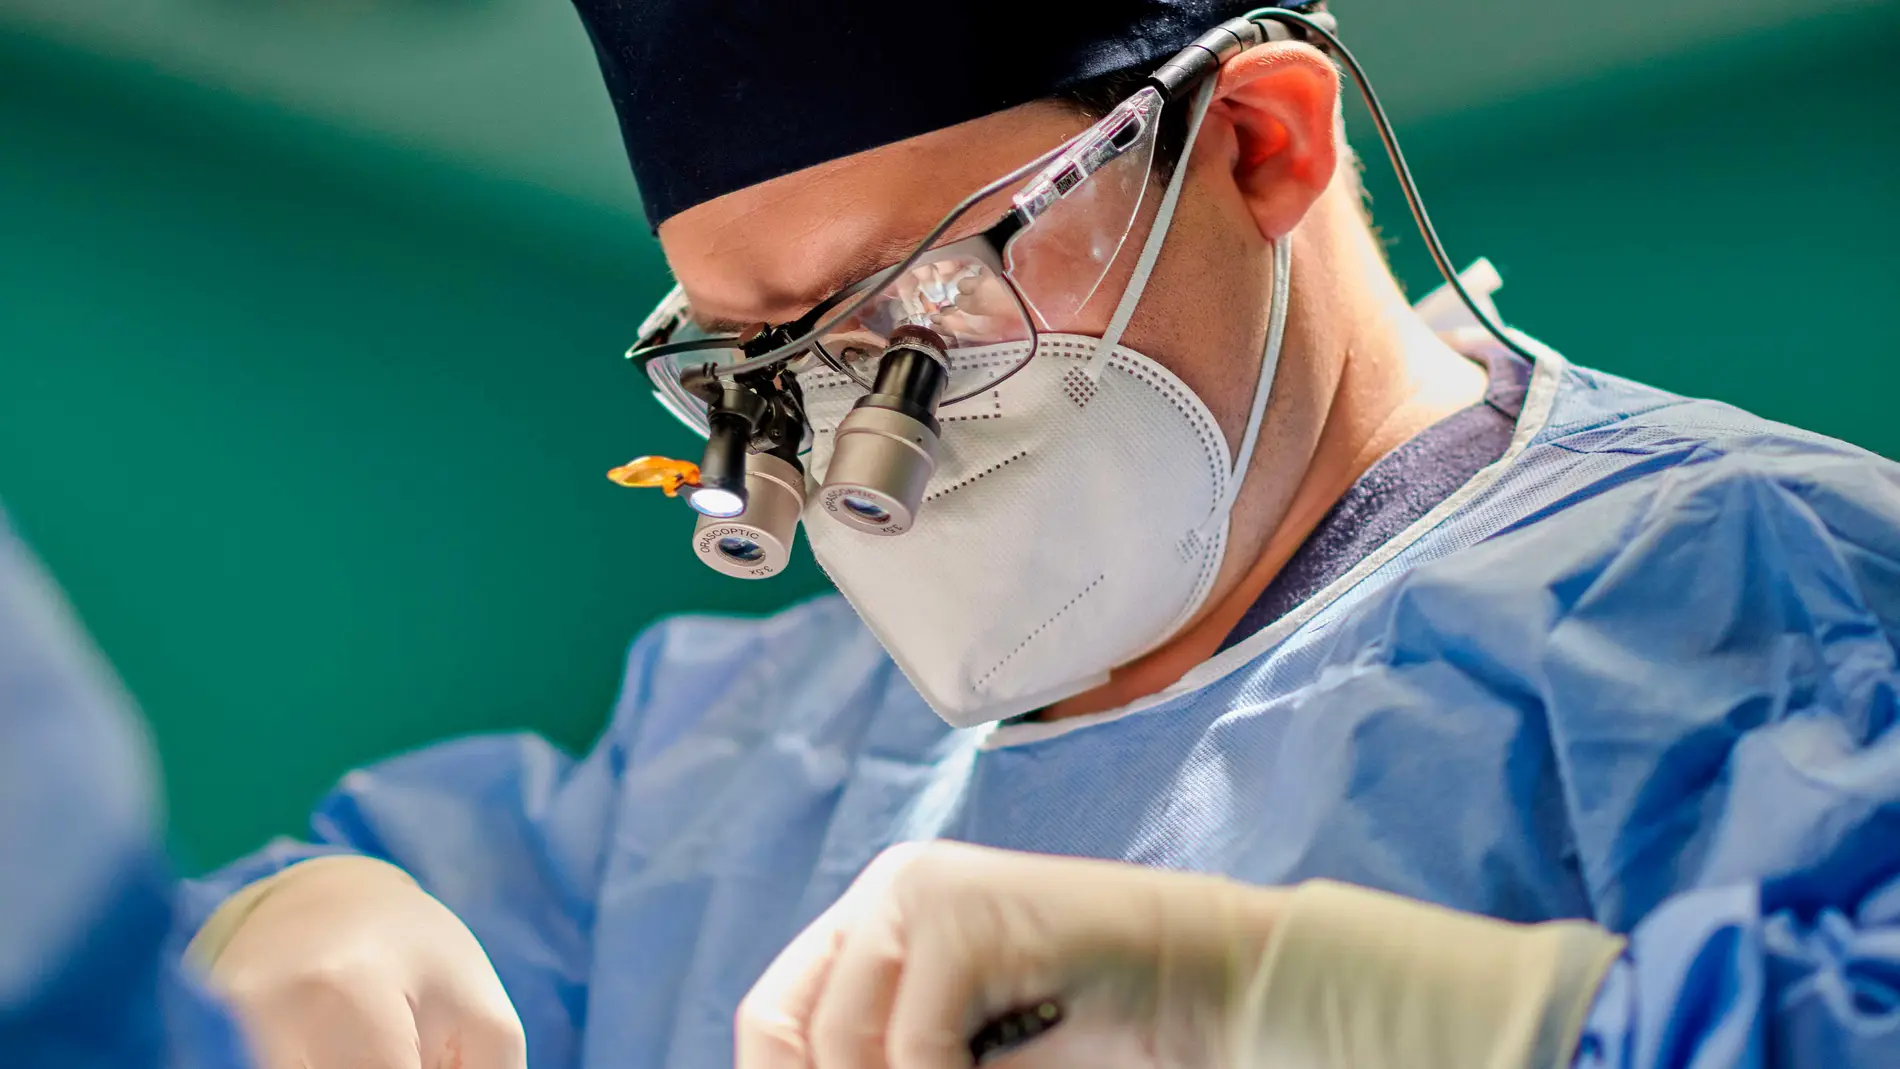 Con más de 3.000 cirugías de rinoplastia a sus espaldas, la experiencia adquirida le permite enfrentarse a todo tipo de casos complejos